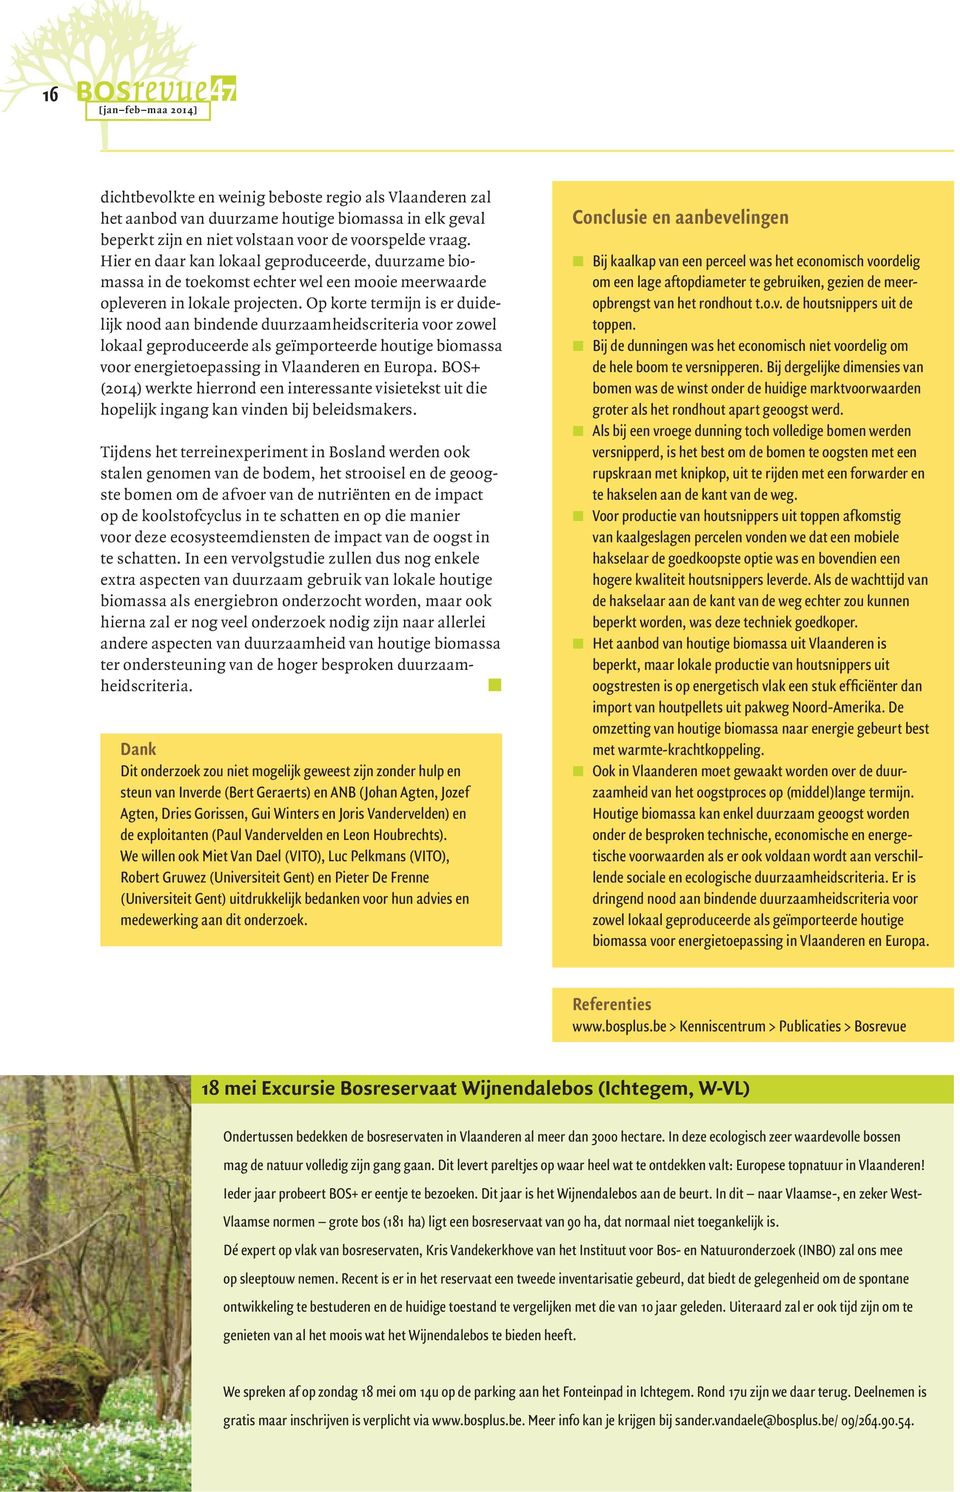 Op korte termijn is er duidelijk nood aan bindende duurzaamheidscriteria voor zowel lokaal geproduceerde als geïmporteerde houtige biomassa voor energietoepassing in Vlaanderen en Europa.